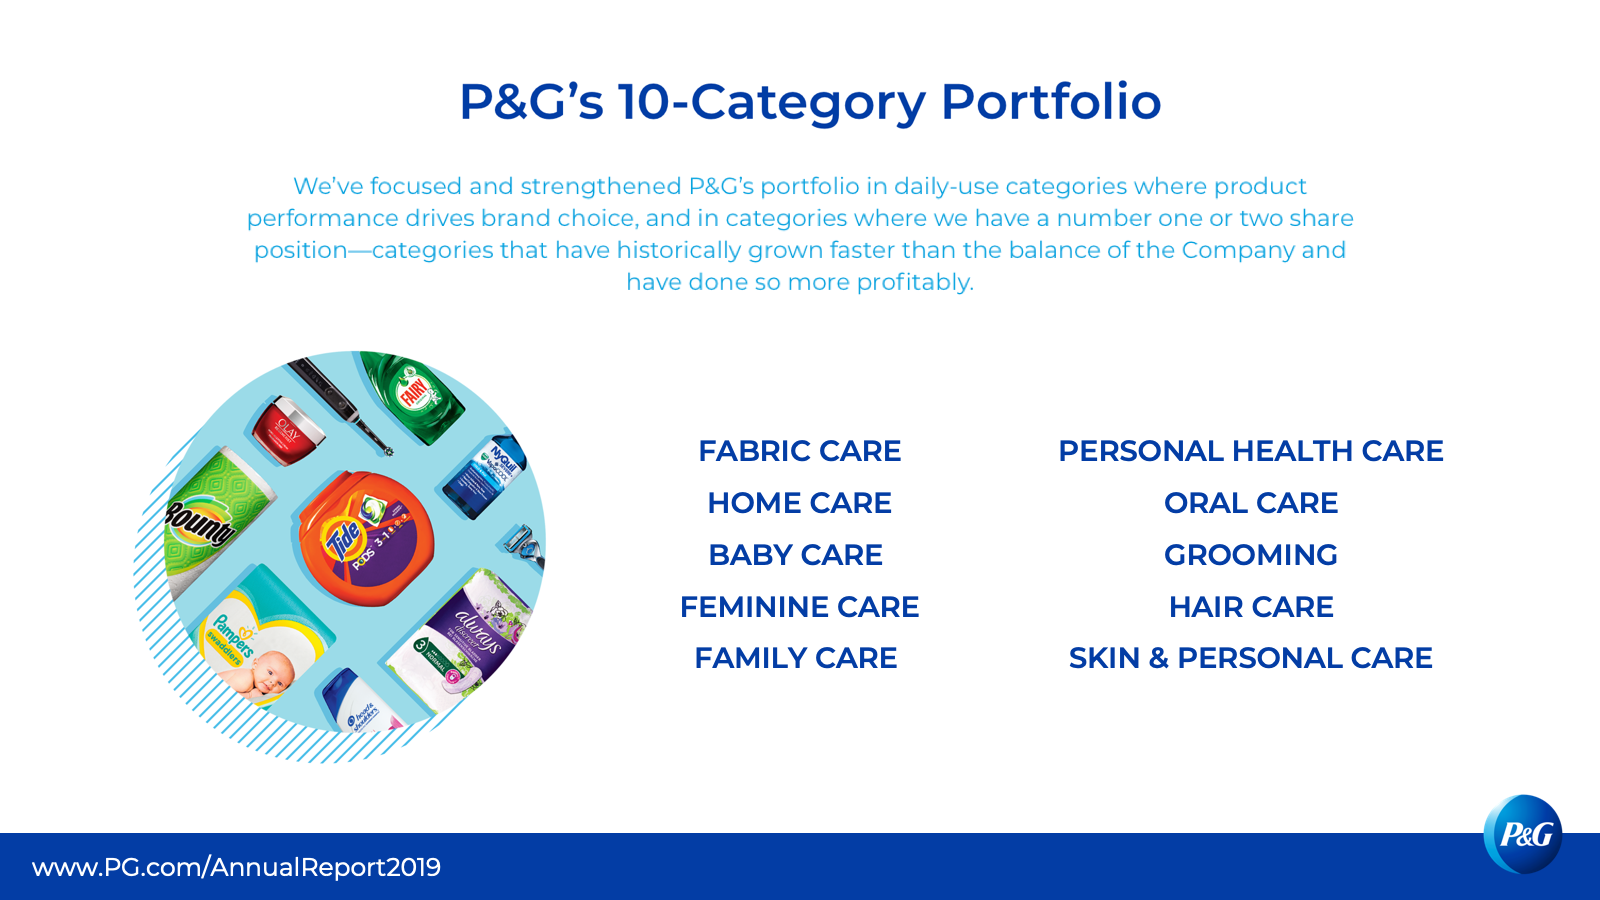 P&G's 10-category portfolio